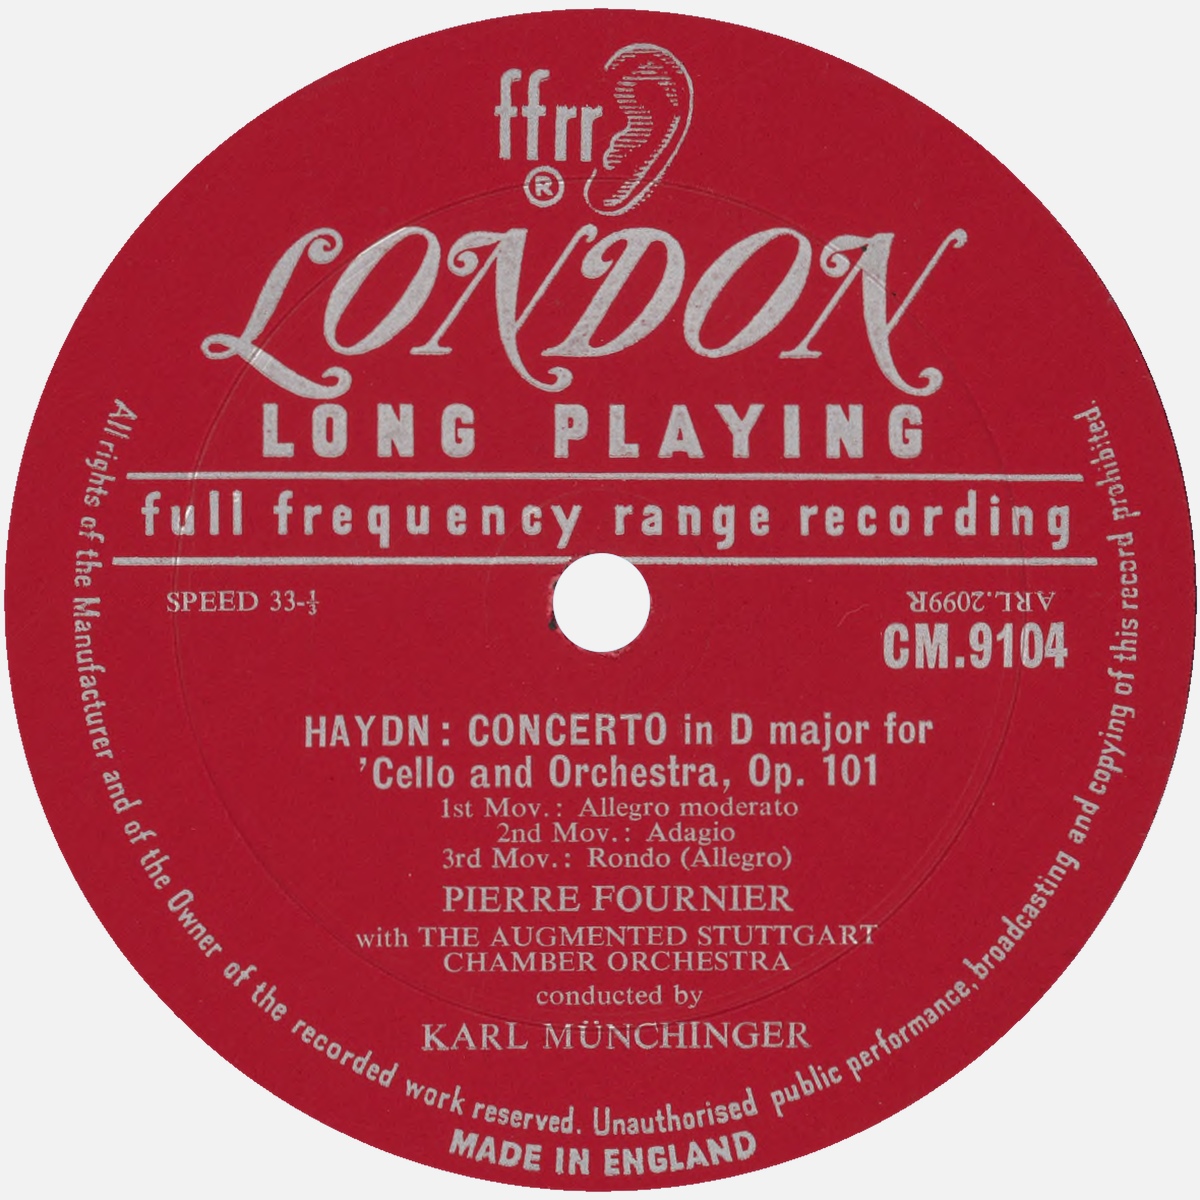 Étiquette recto du disque LONDON CM 9104